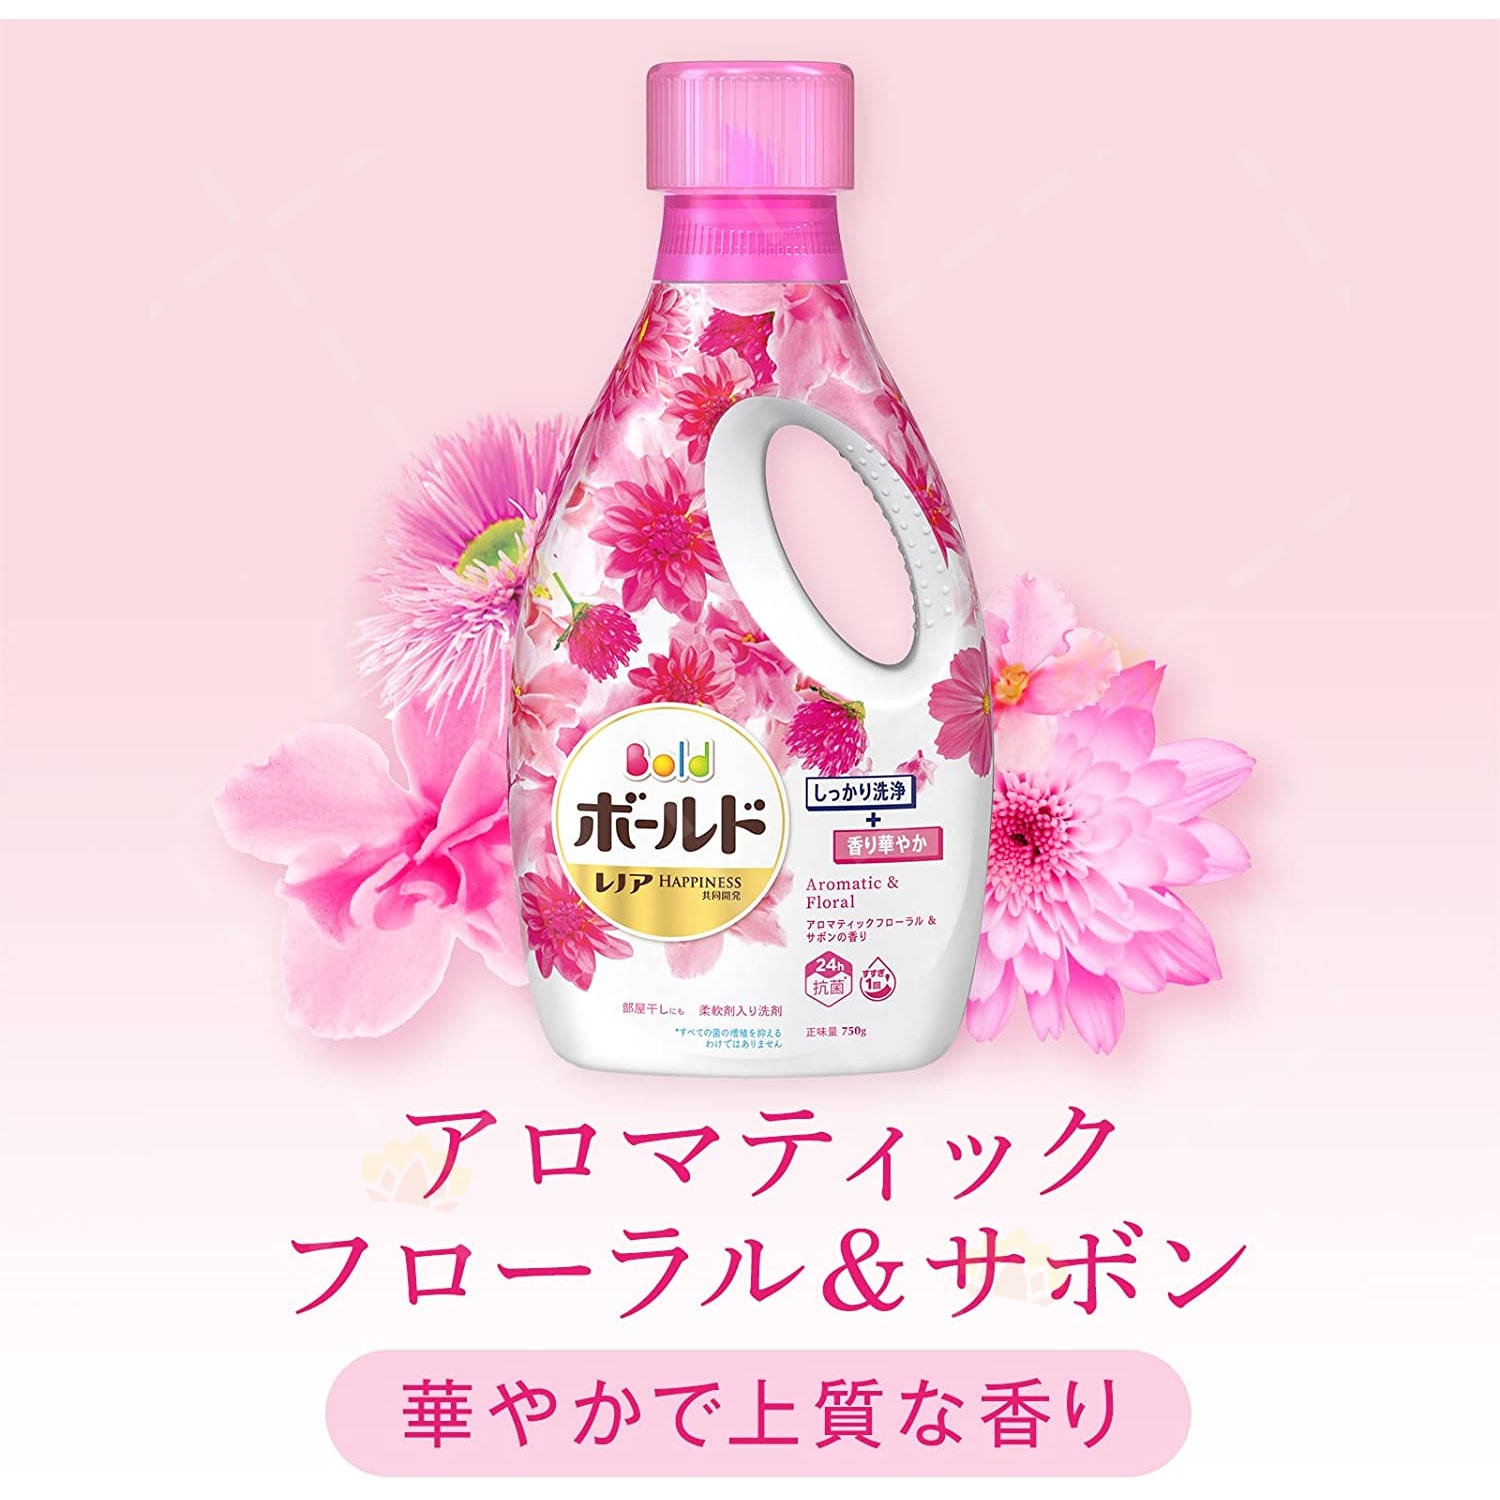 P&G 寶潔BOLD 粉紅色芳香花香洗衣液750g | BabyMall